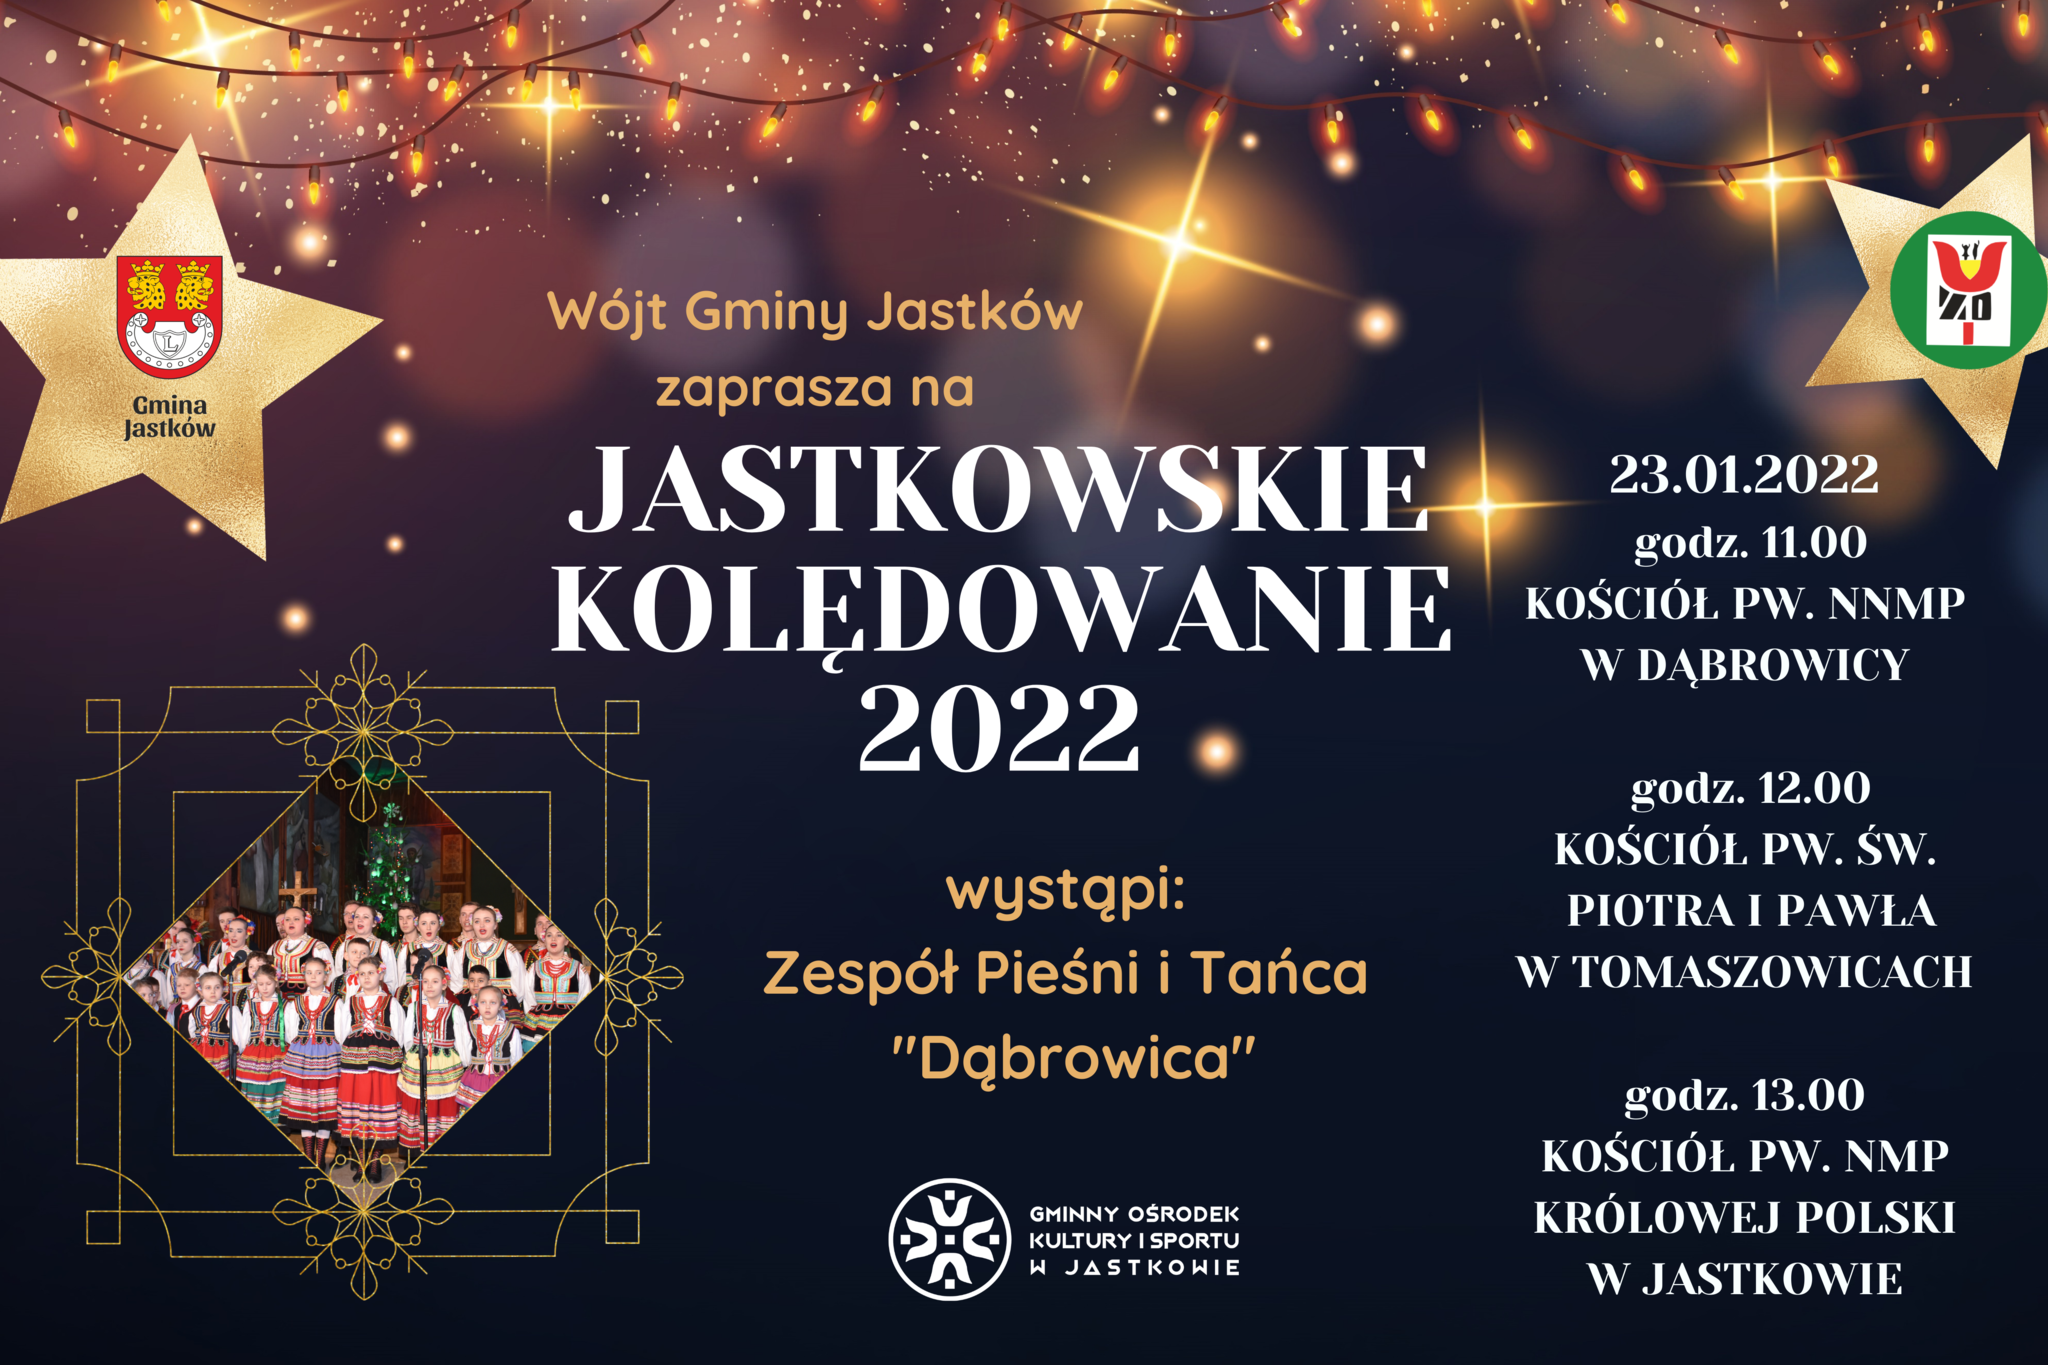 Gminny Ośrodek Kultury i Sportu zaprasza na koncerty z cyklu "Jastkowskie Kolędowanie 2022" 